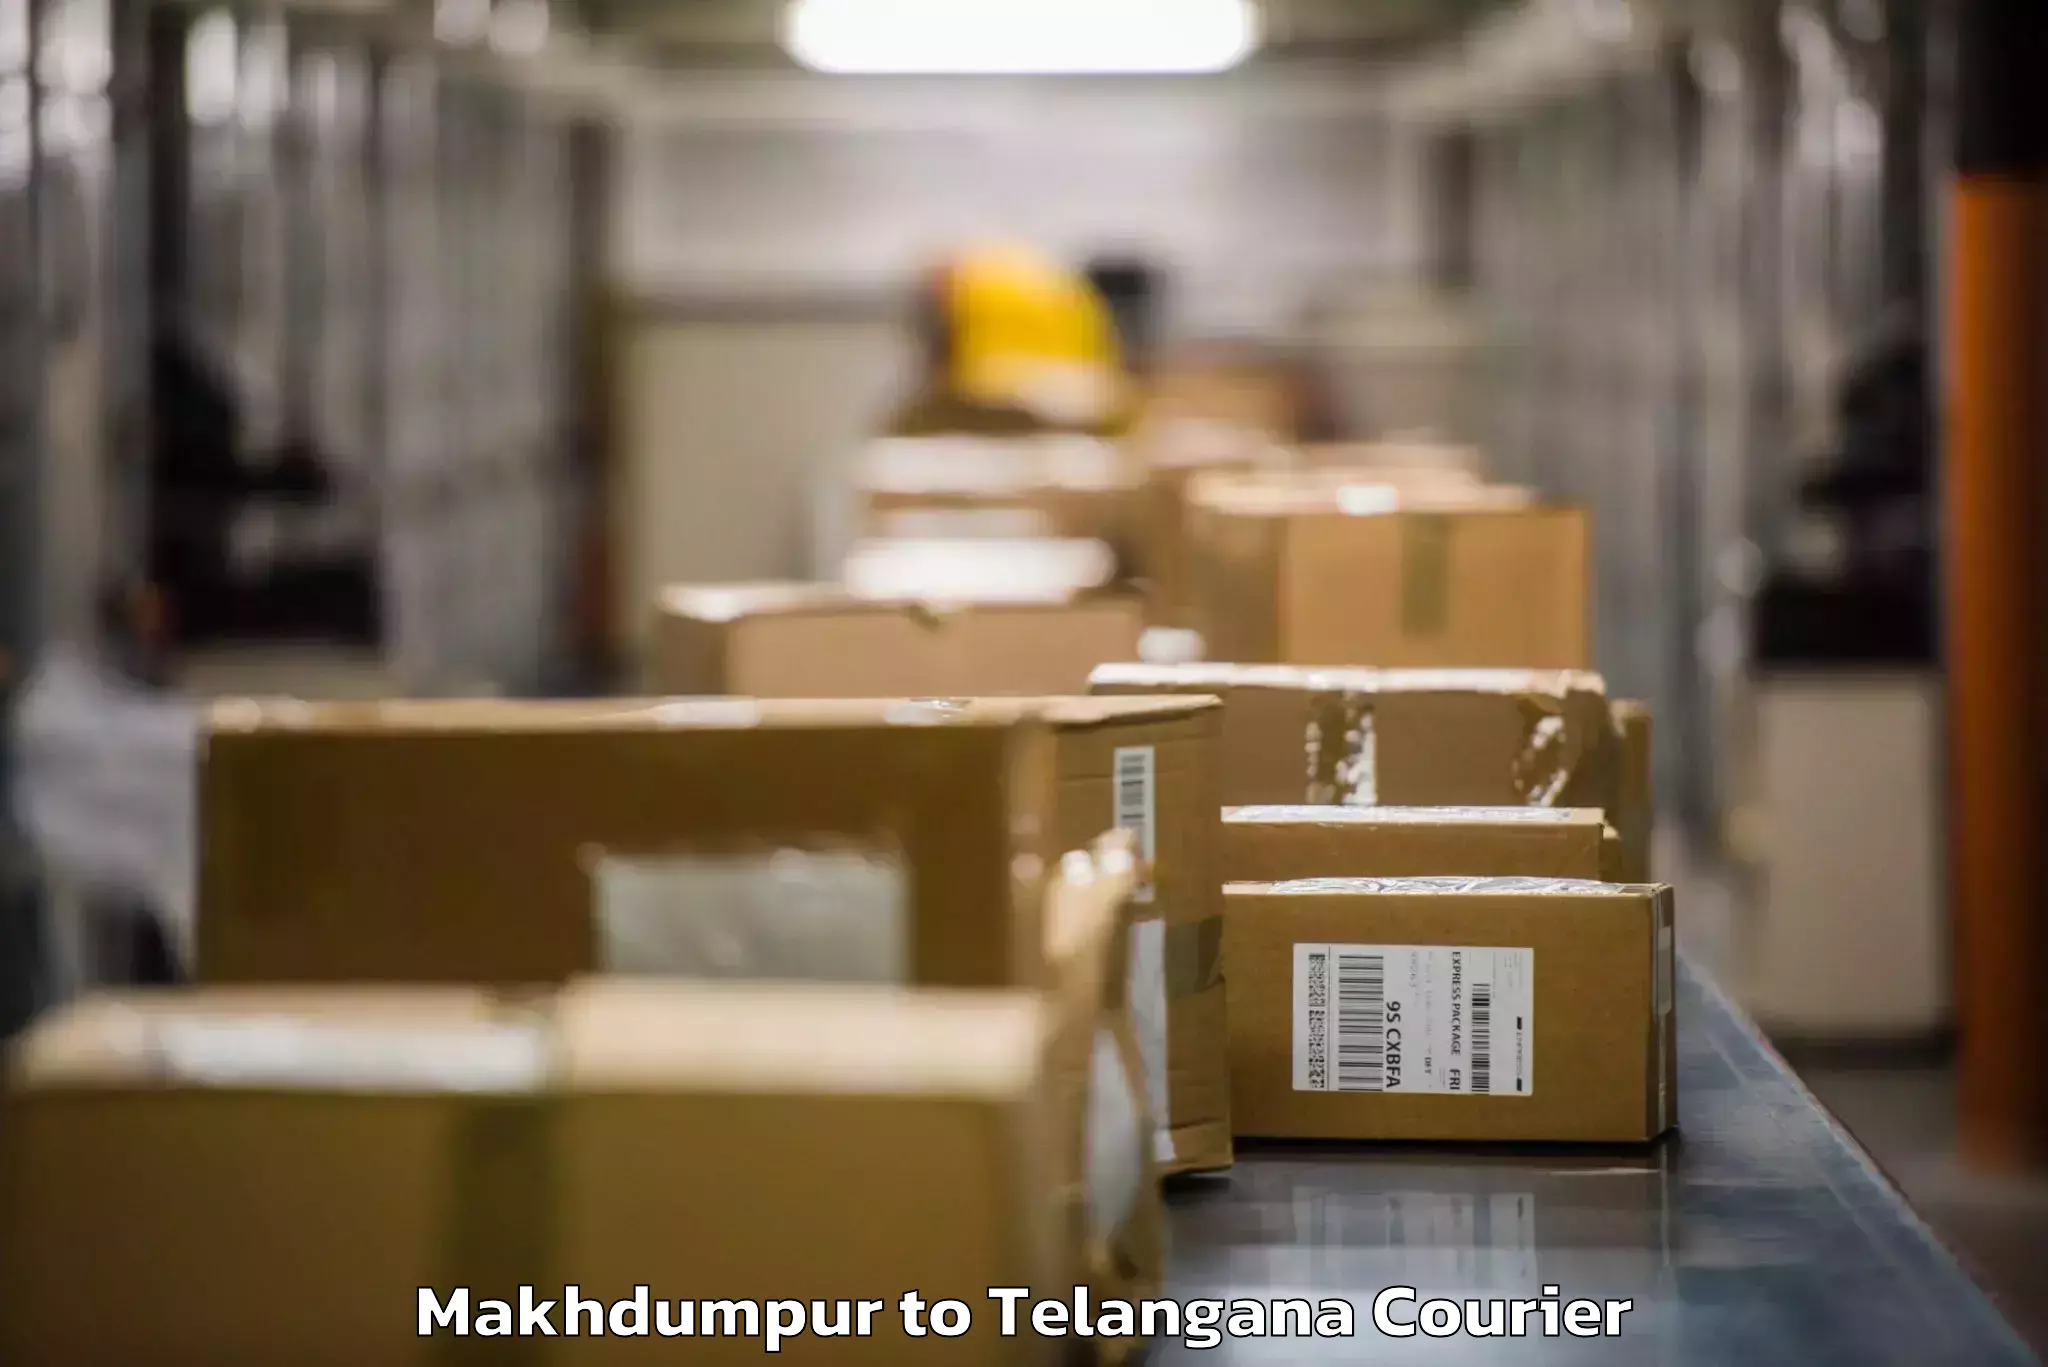 Baggage shipping service Makhdumpur to Telangana